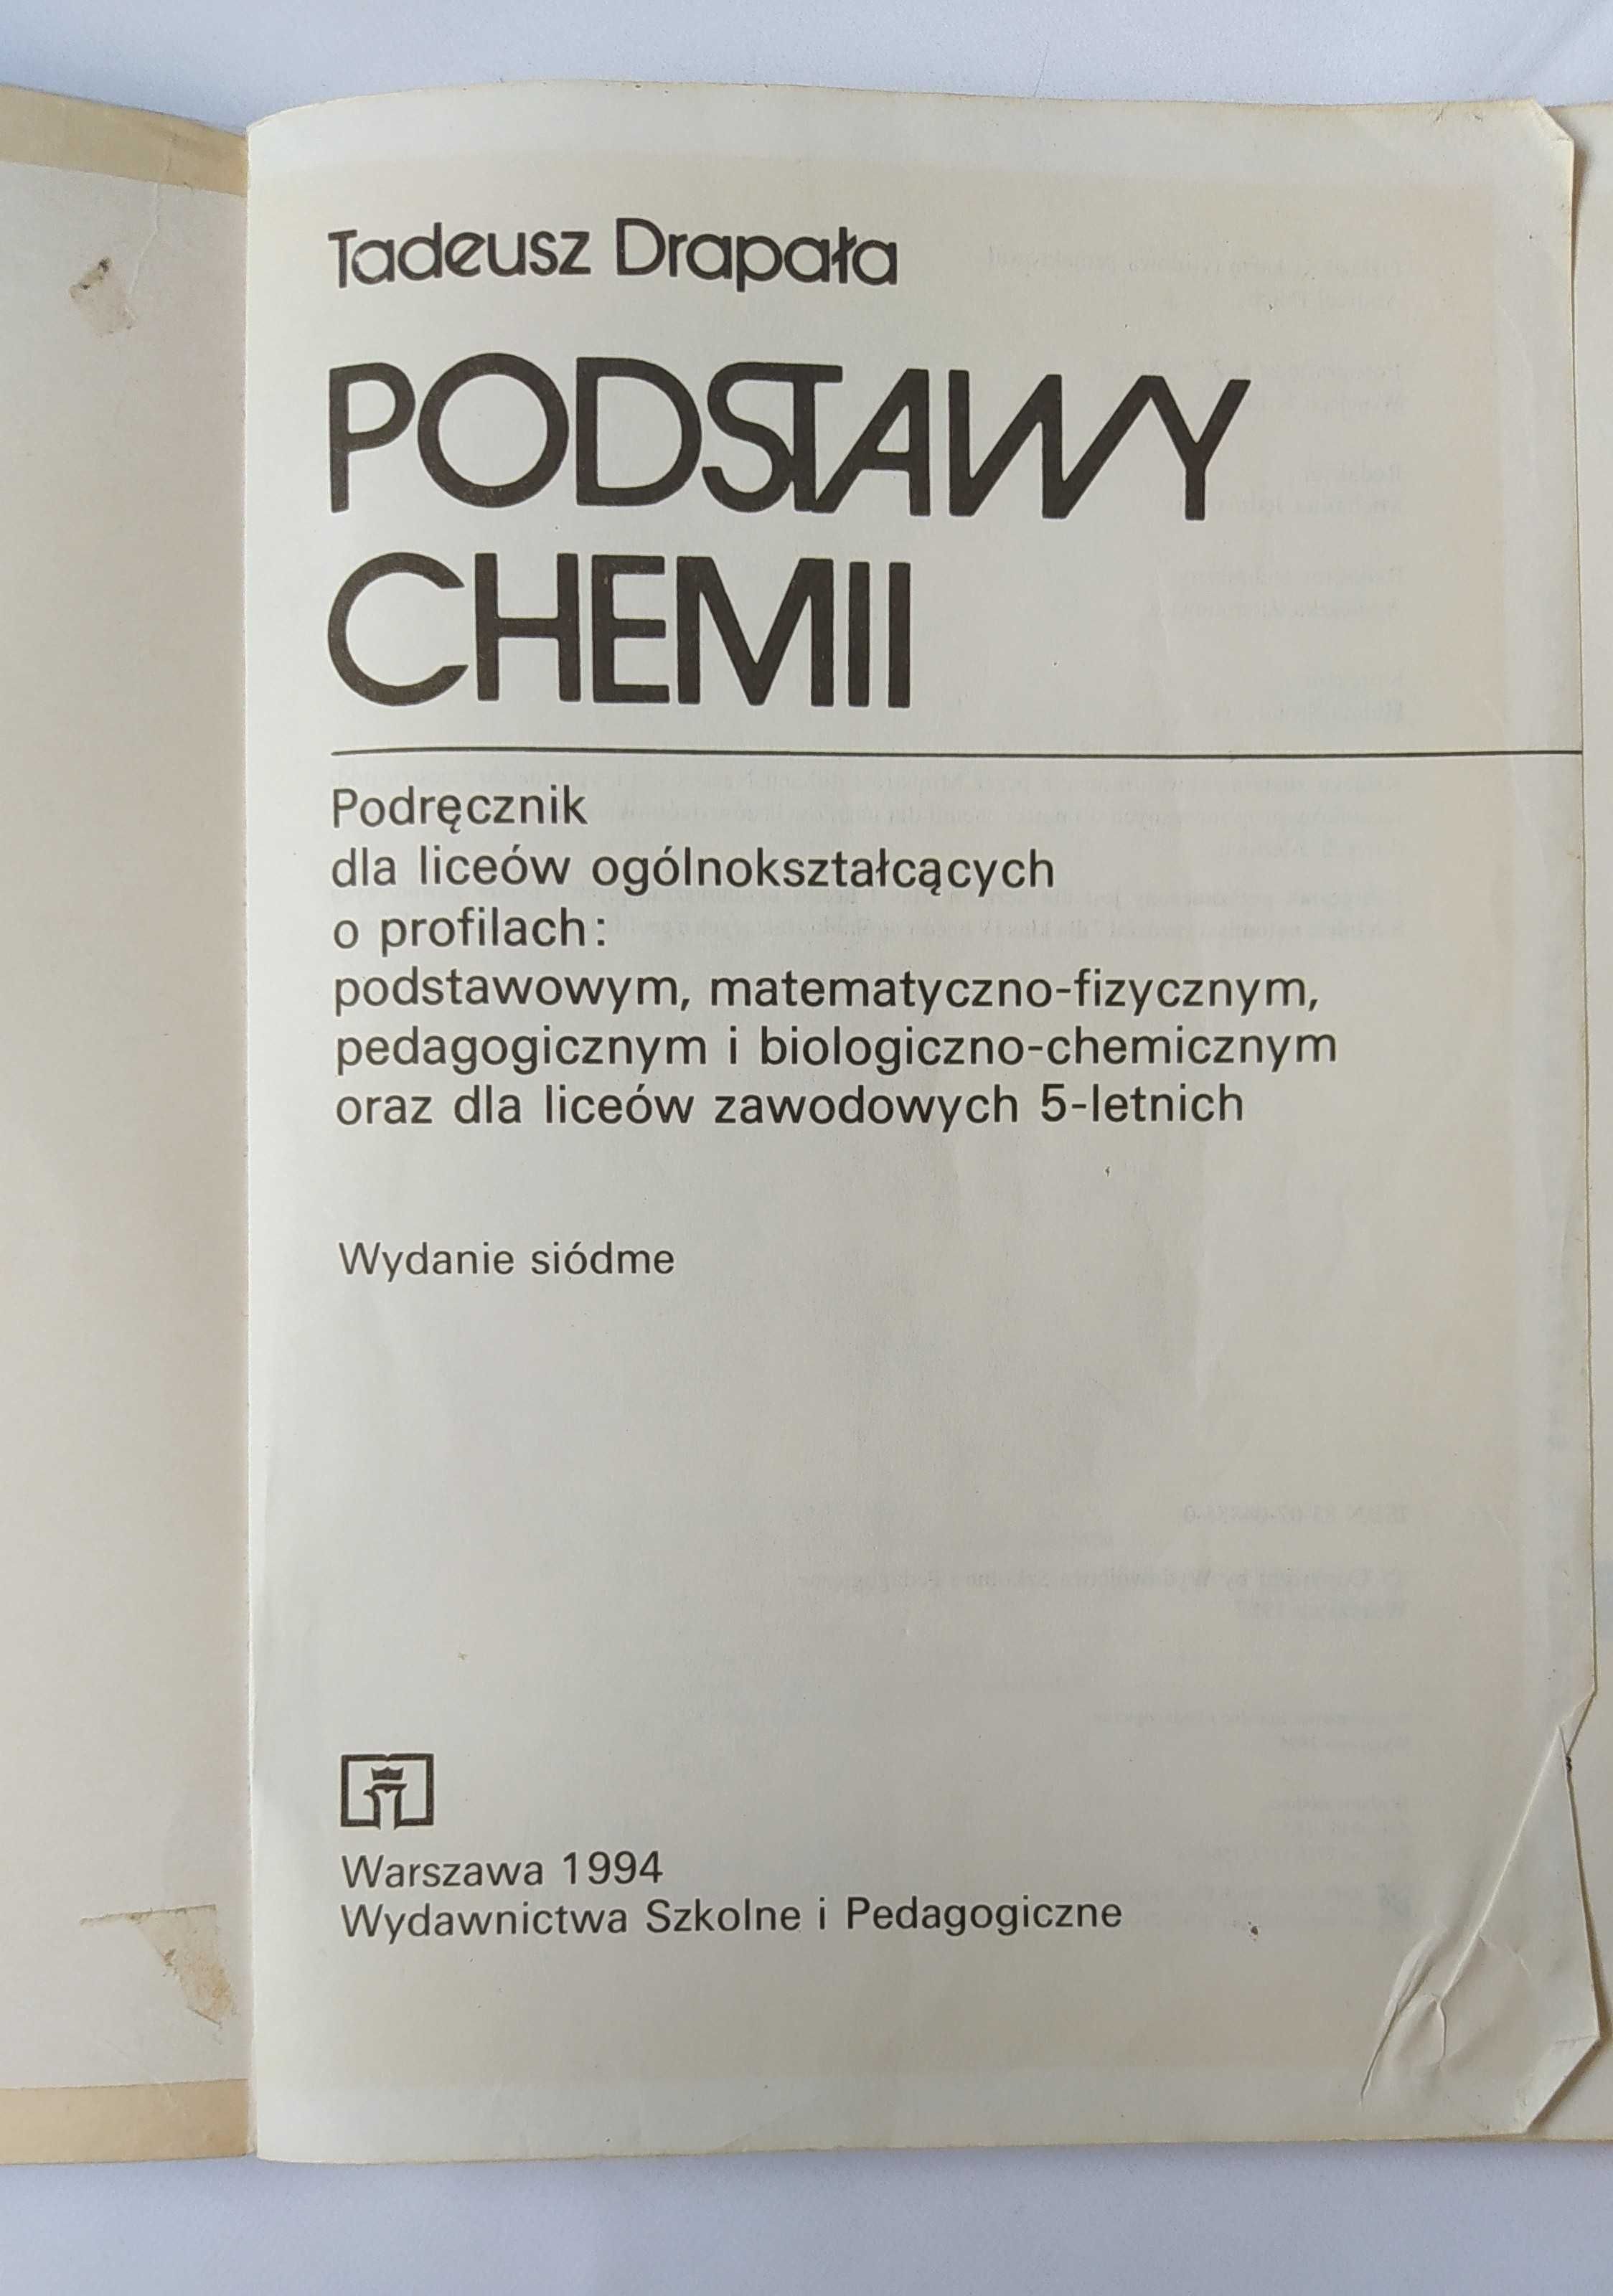 PODSTAWY CHEMII – Tadeusz Drapała